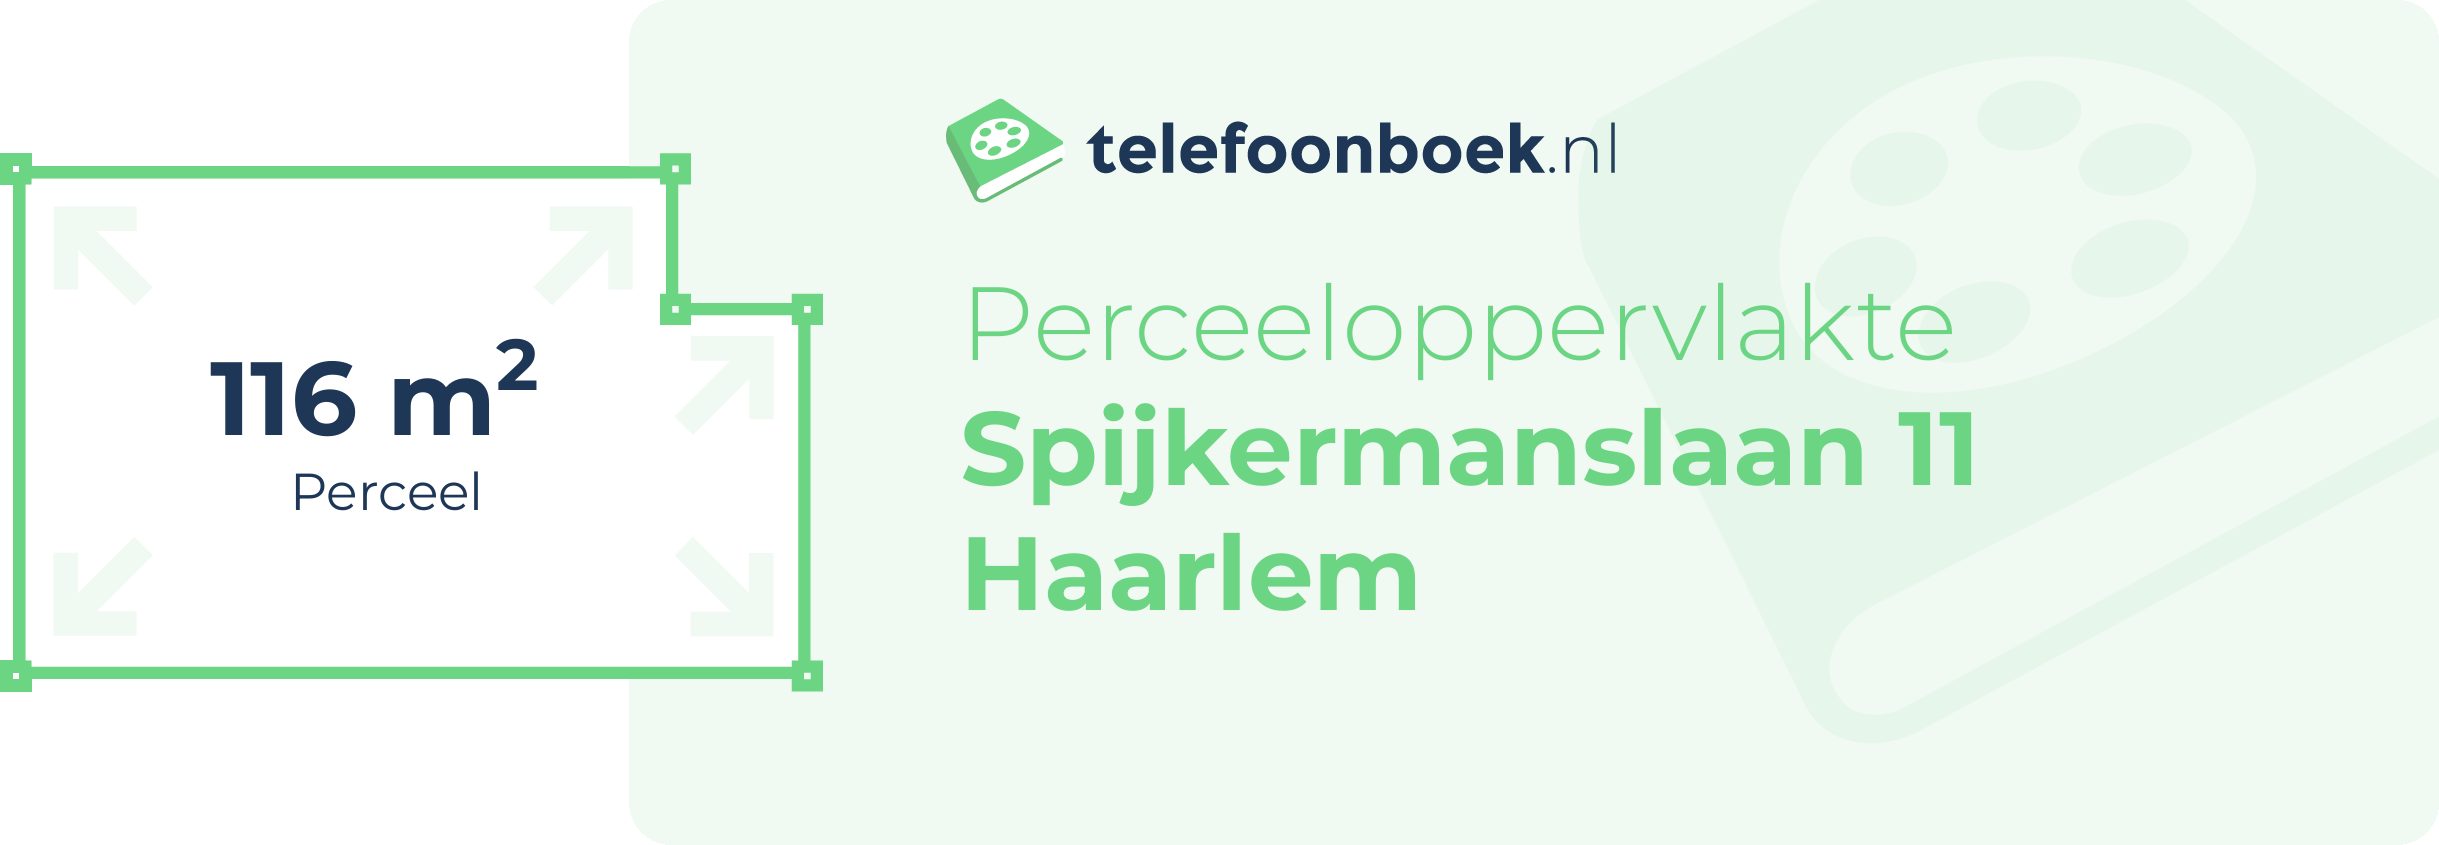 Perceeloppervlakte Spijkermanslaan 11 Haarlem